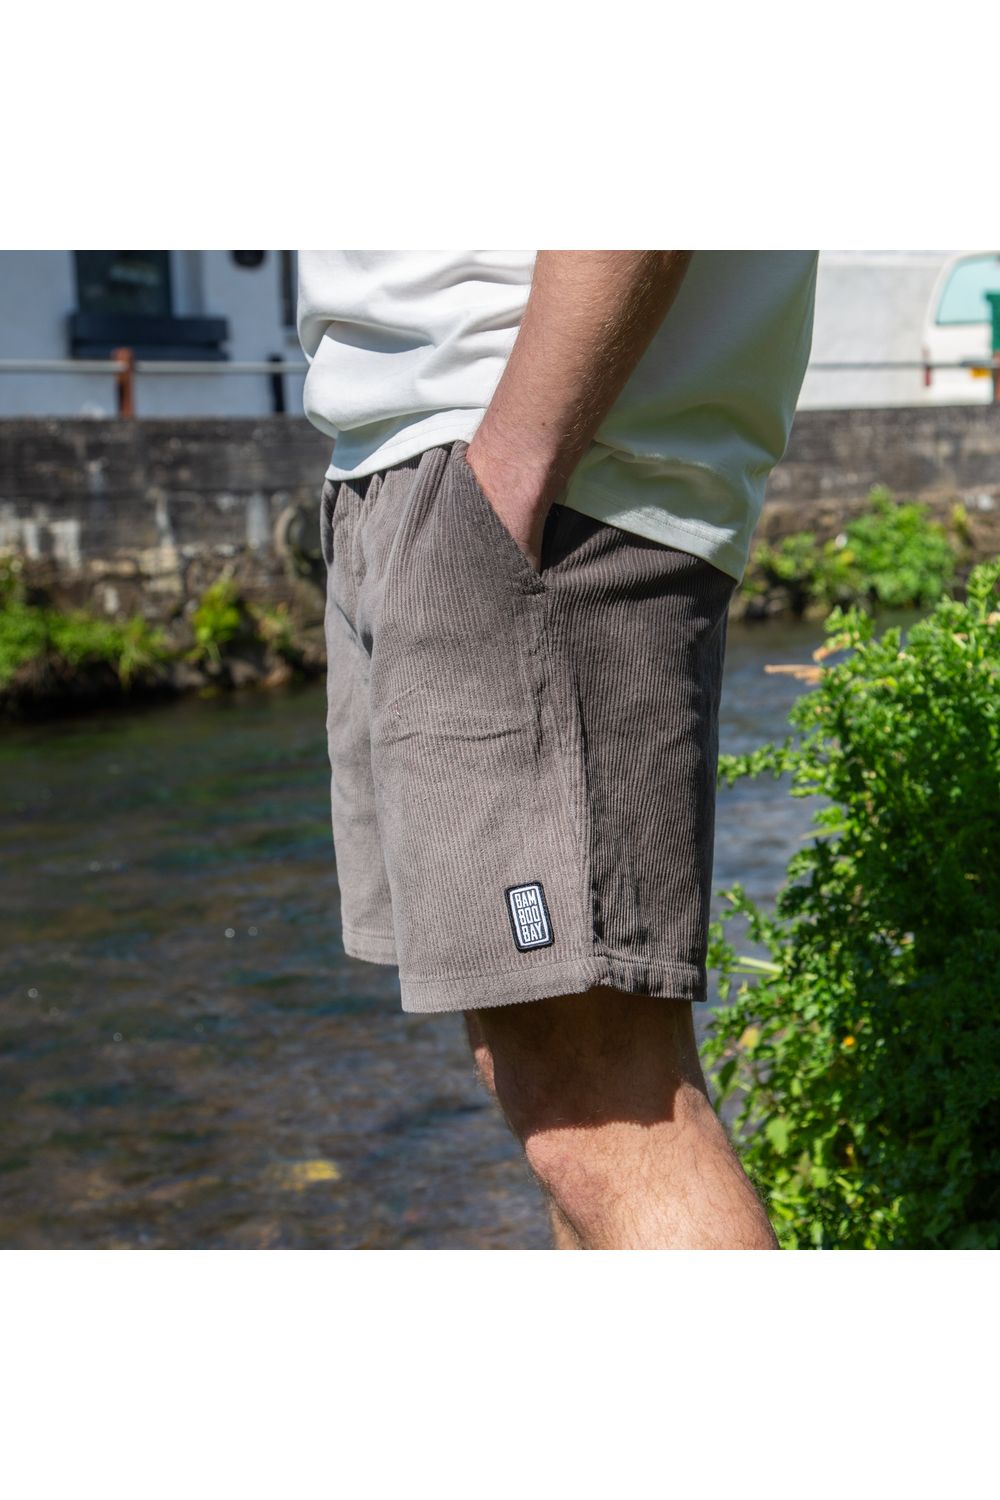 Bamboobay grey cord shorts from side